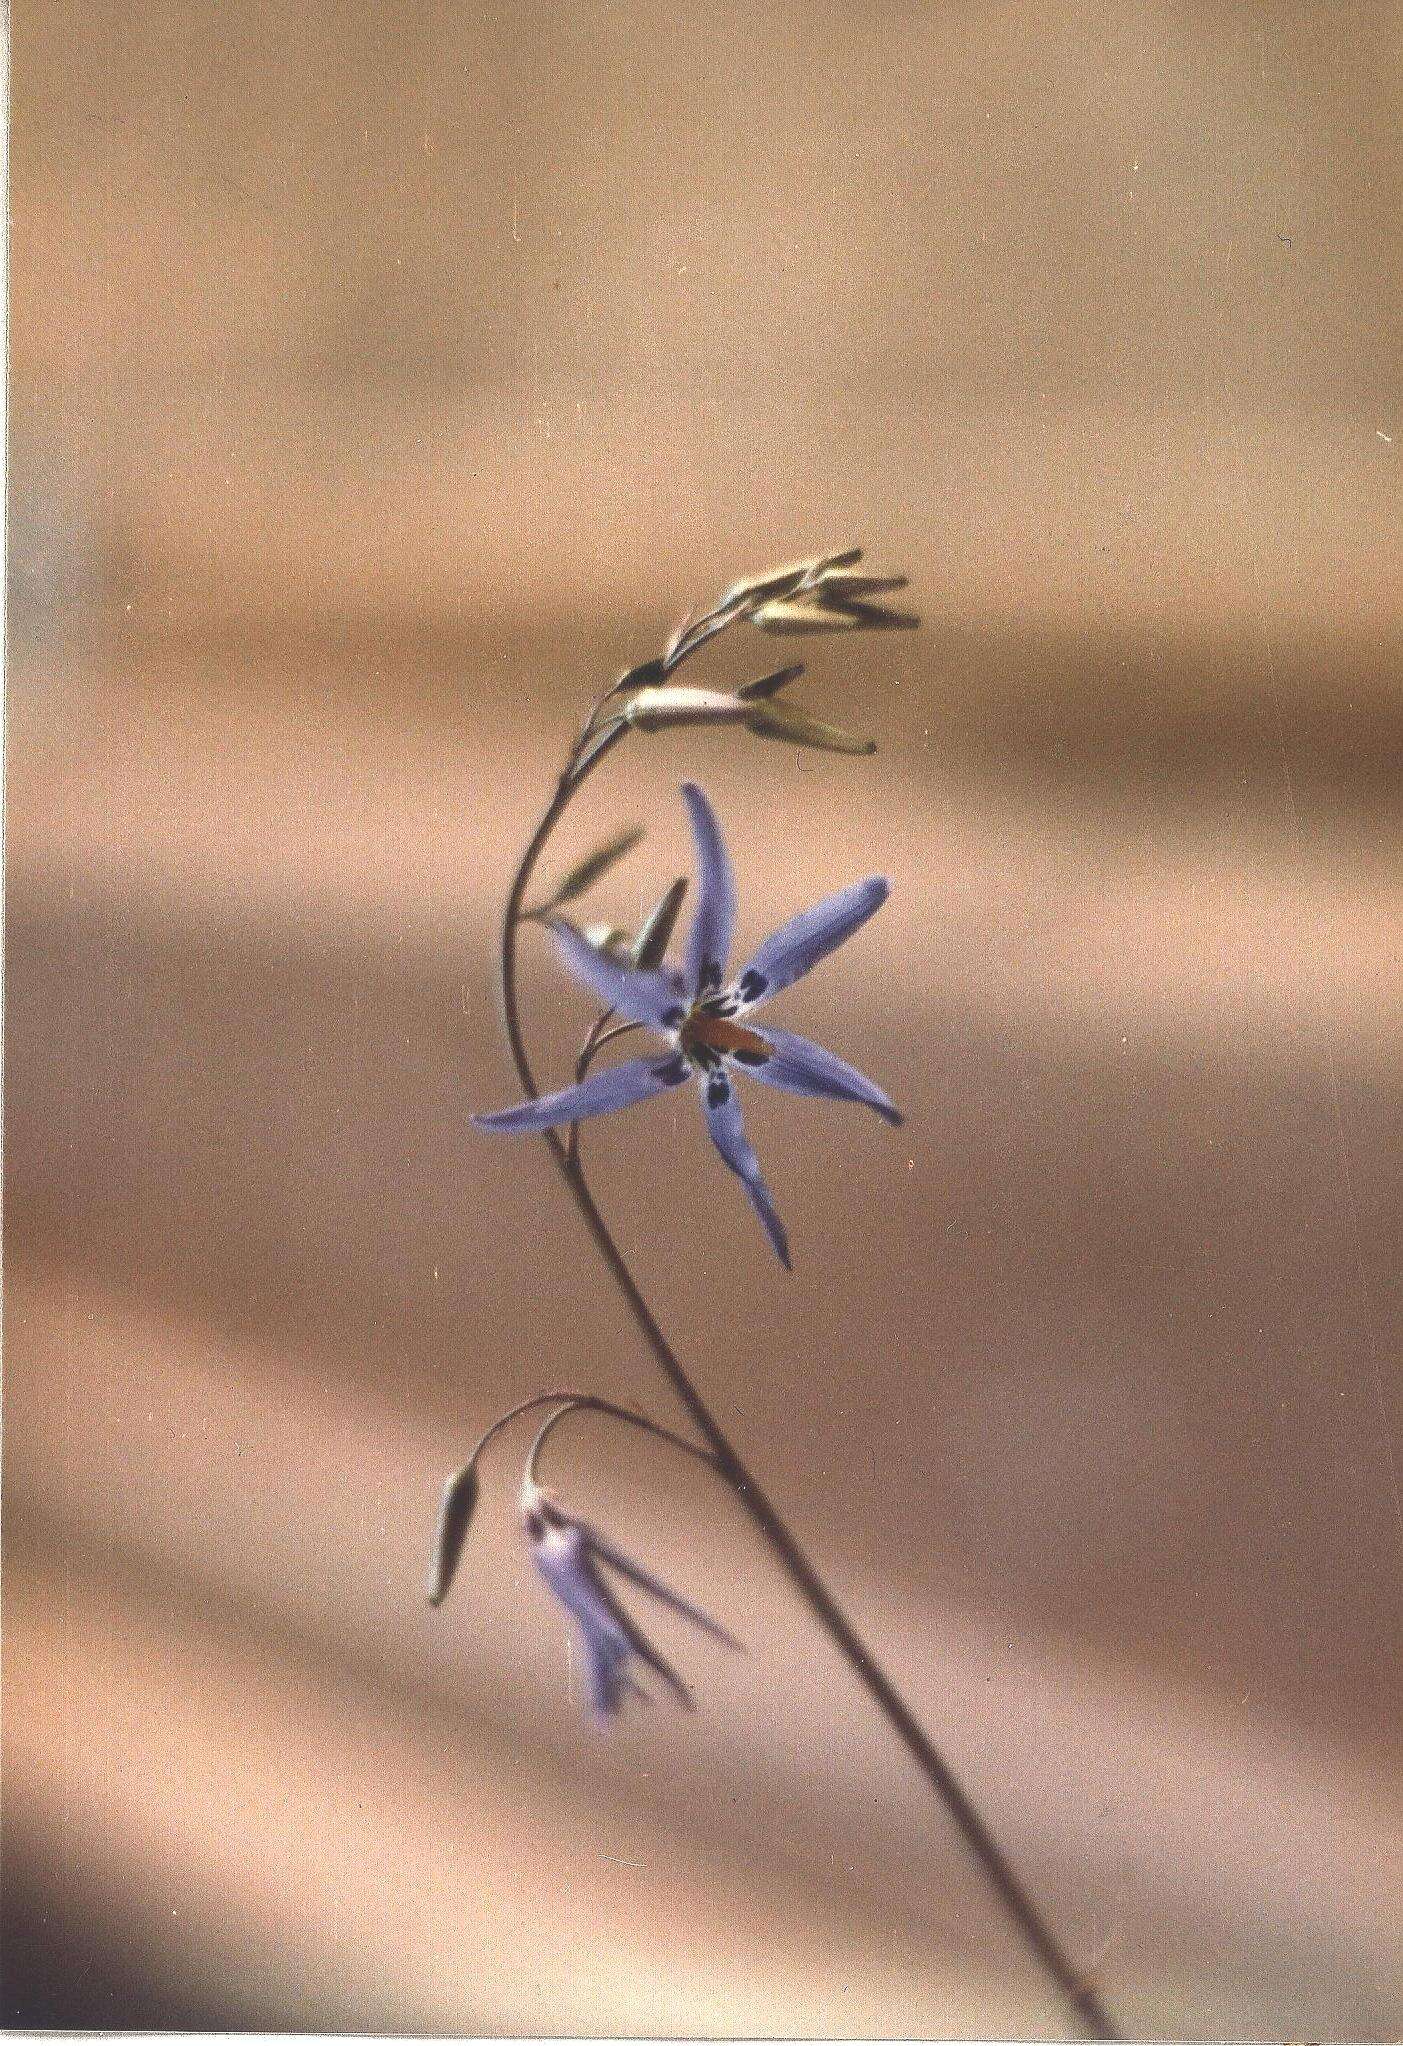 Image of Tecophilaeaceae